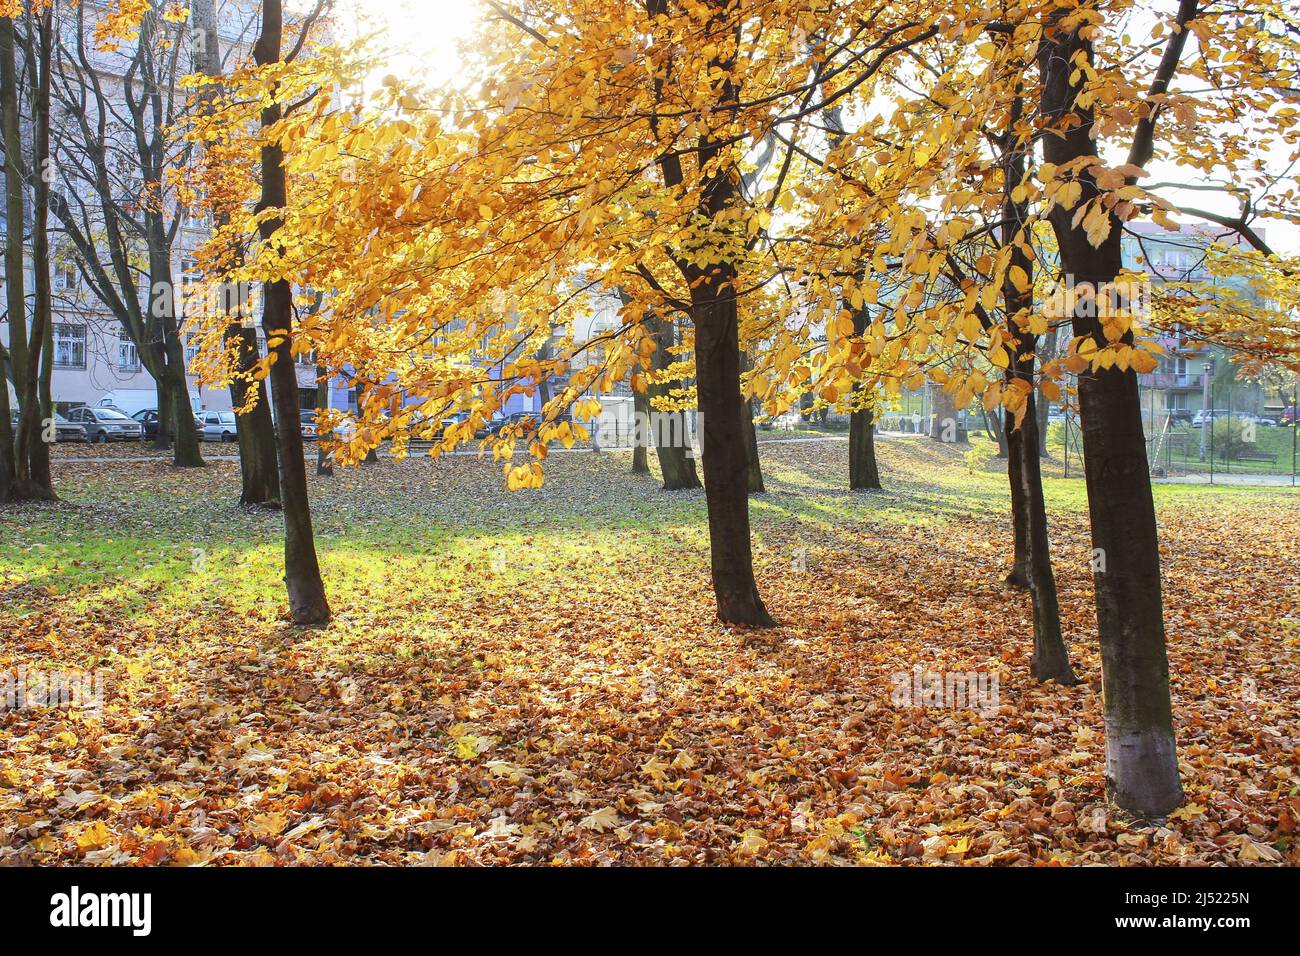 Magnifique parc d'automne dans le quartier de Podgorze, Cracovie, Pologne. Banque D'Images